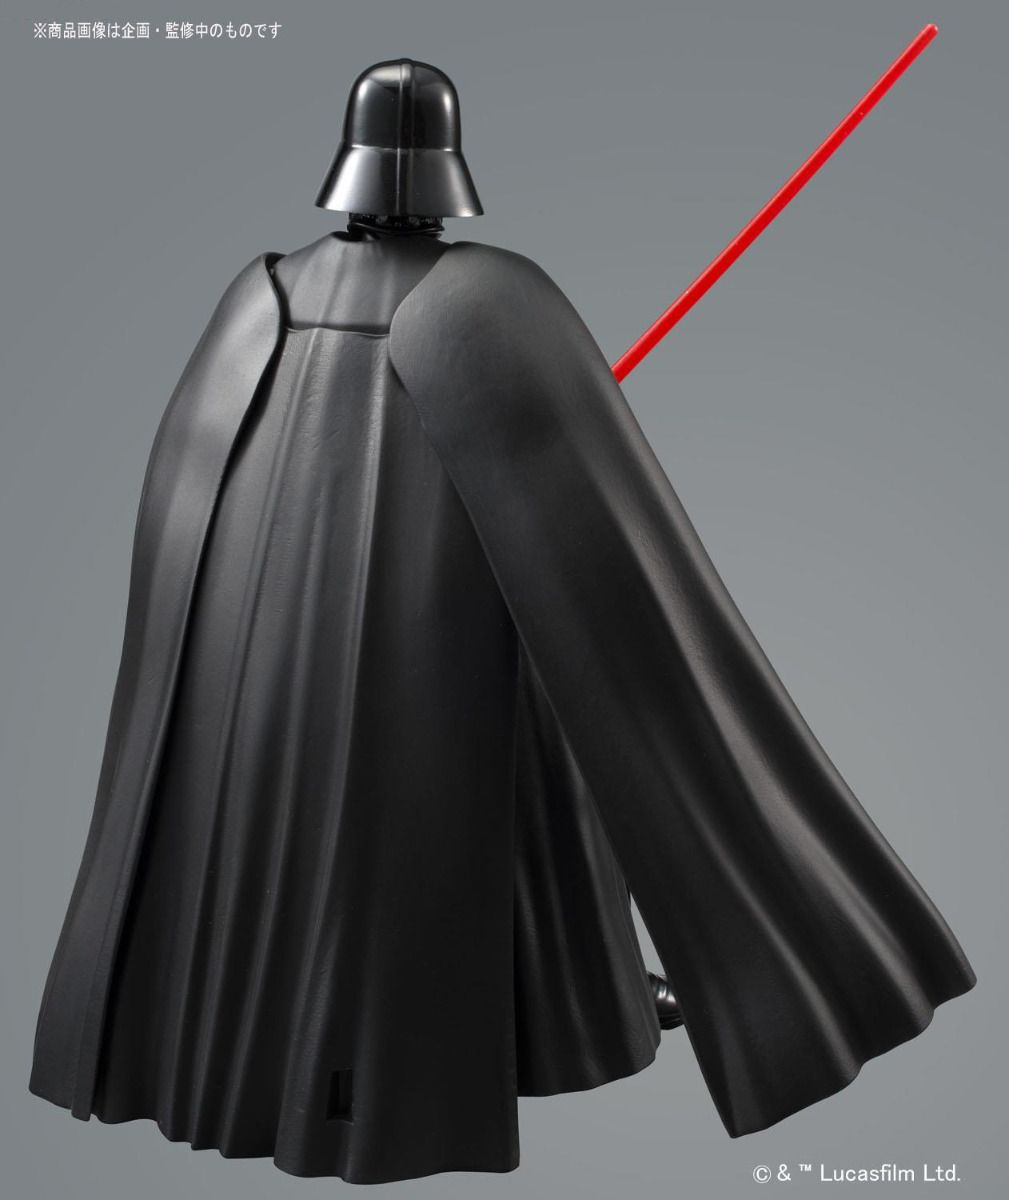 Star Wars Model - 1/12 Darth Vader